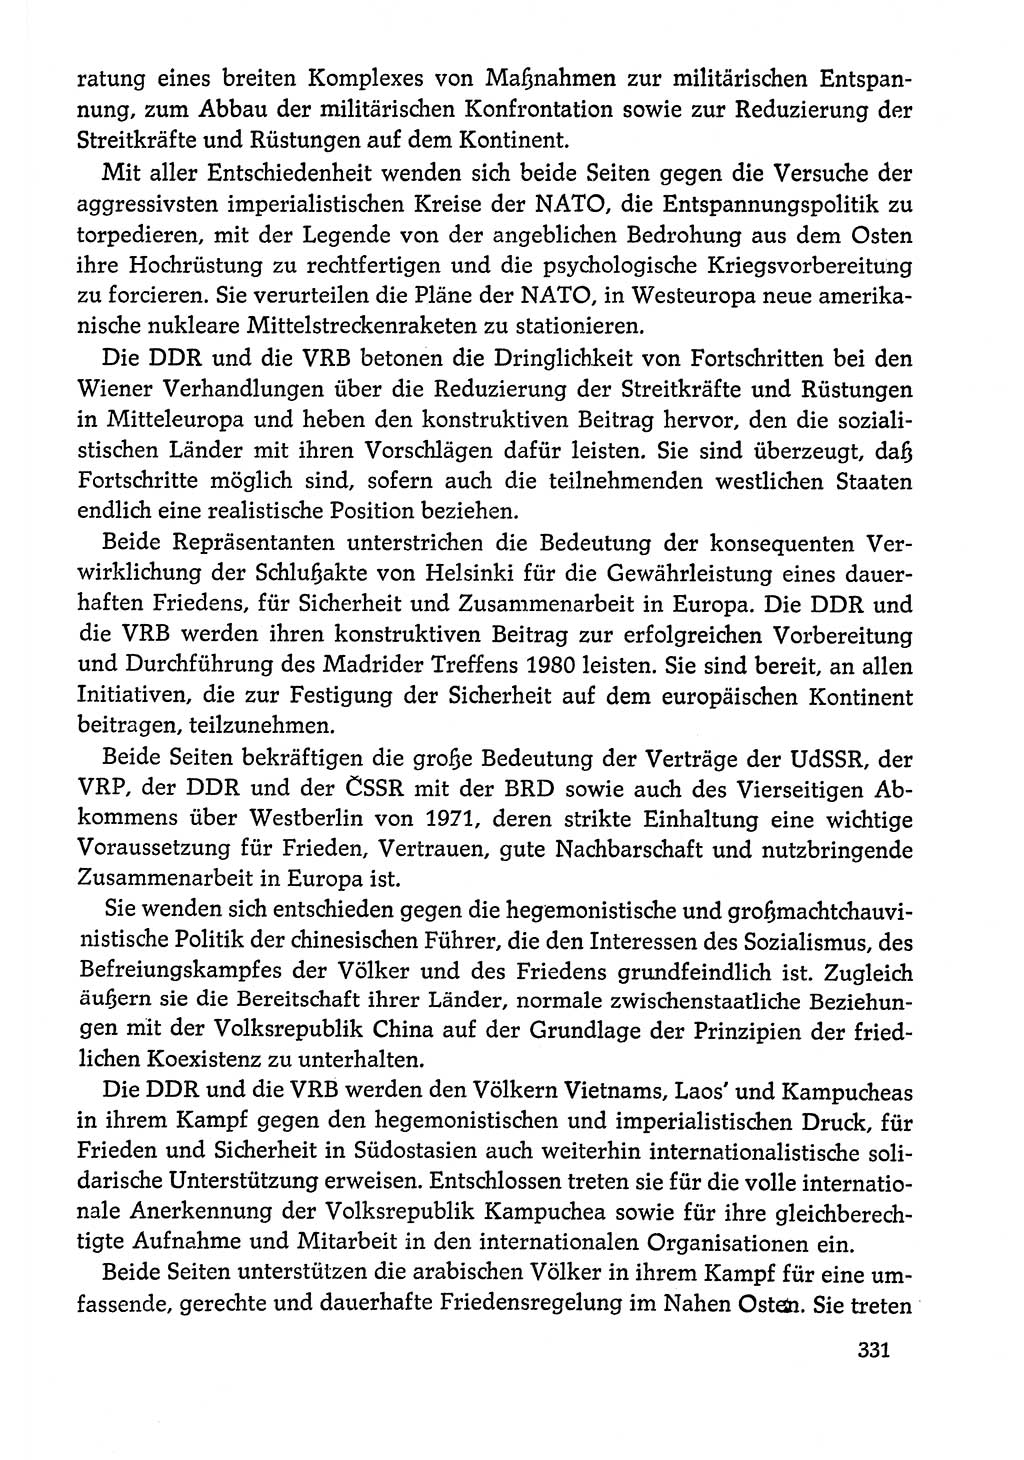 Dokumente der Sozialistischen Einheitspartei Deutschlands (SED) [Deutsche Demokratische Republik (DDR)] 1978-1979, Seite 331 (Dok. SED DDR 1978-1979, S. 331)